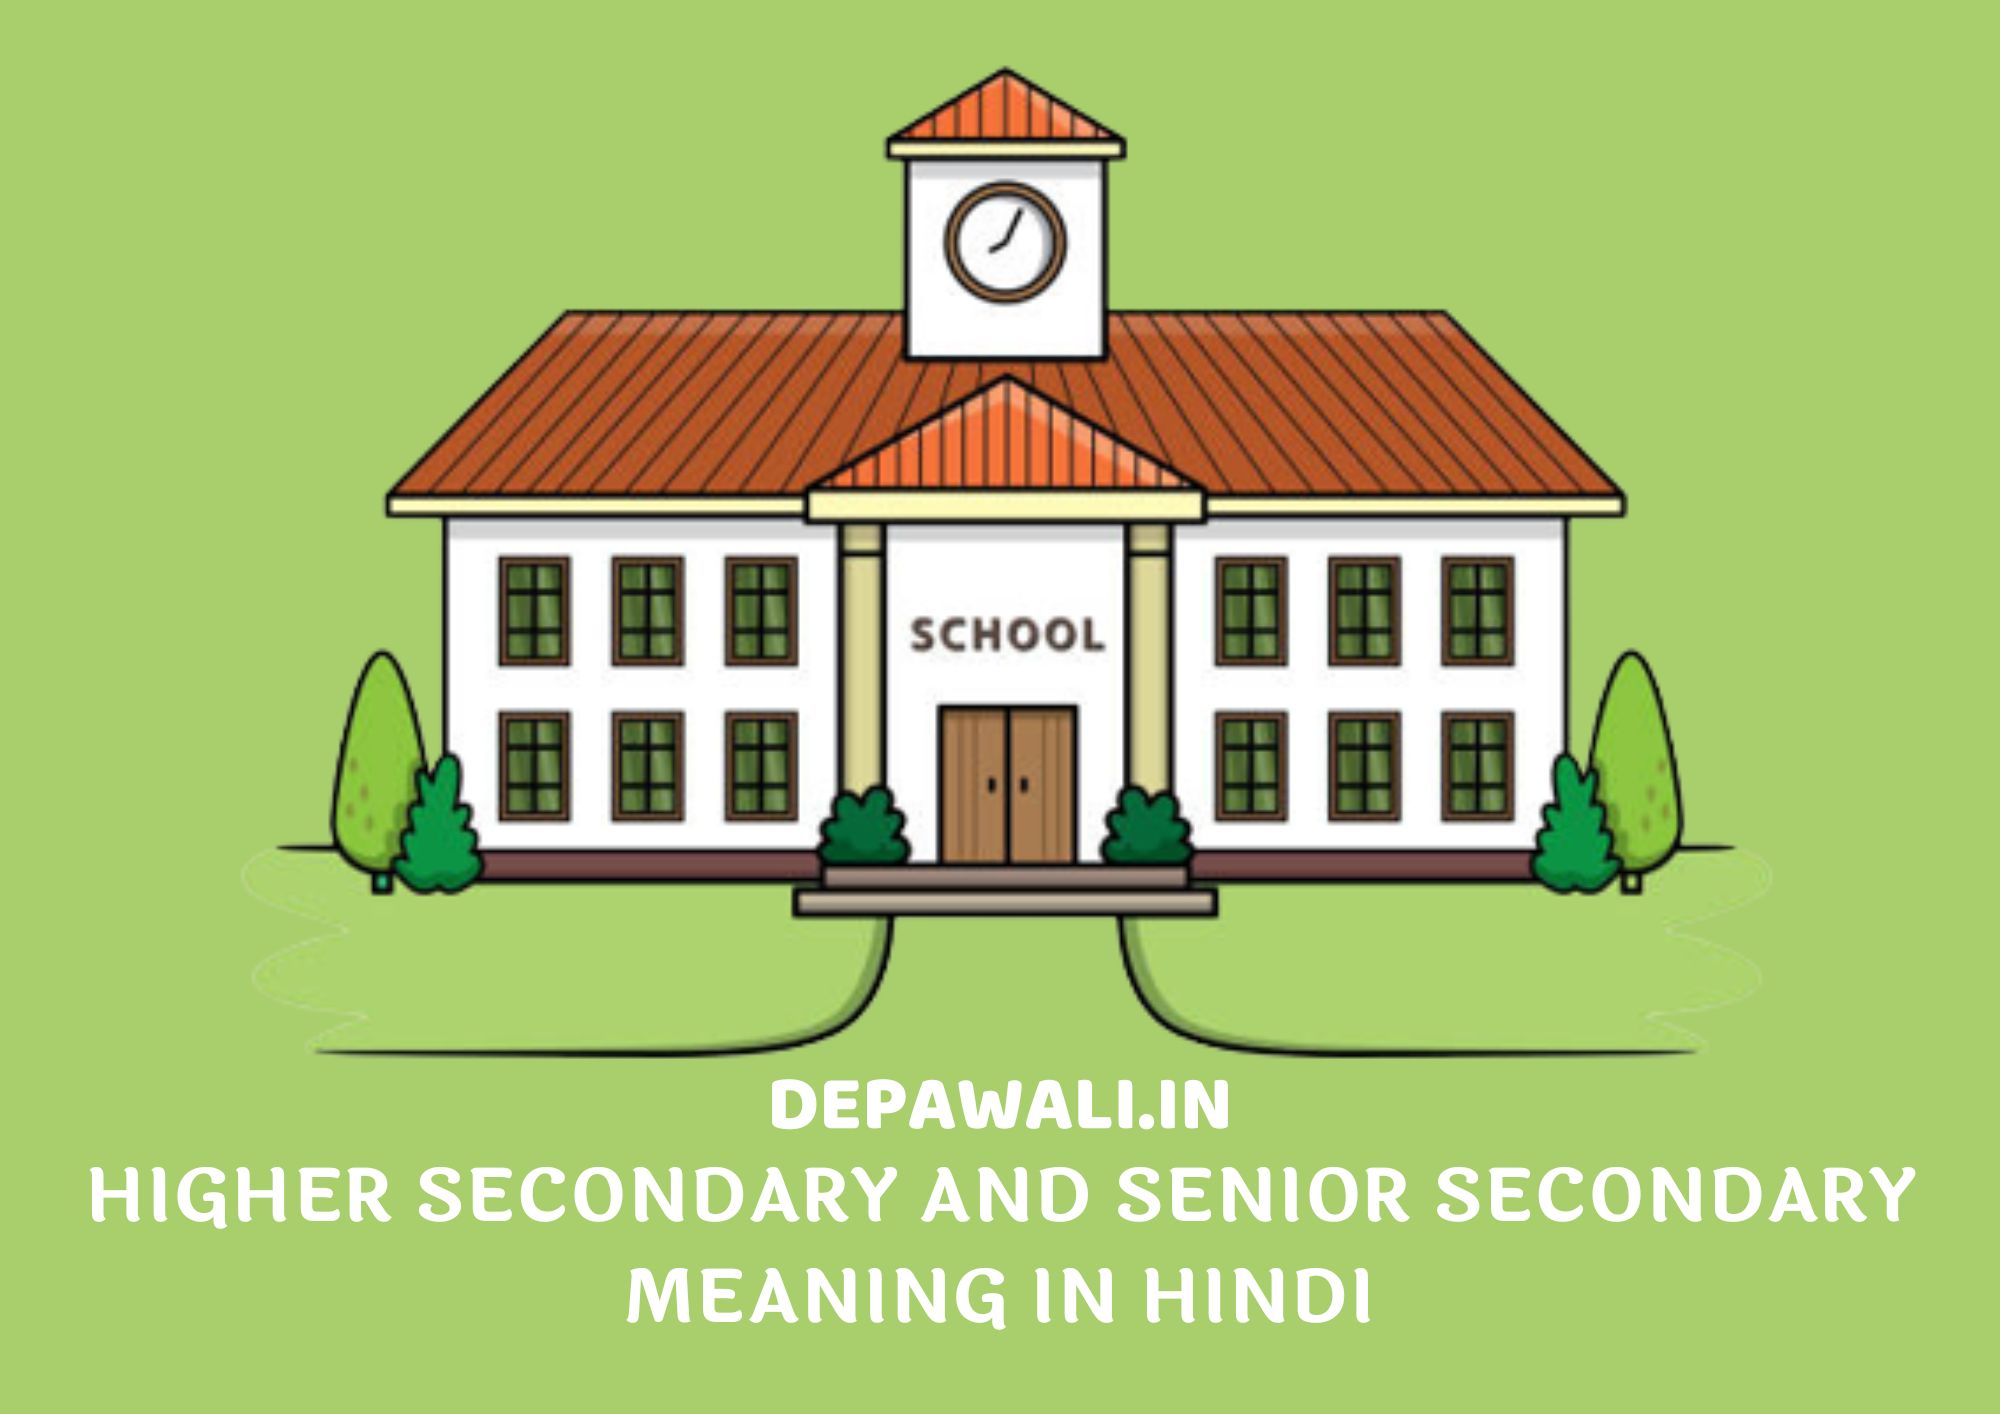 Higher Secondary And Senior Secondary Meaning in Hindi - हायर सेकेंडरी और सीनियर सेकेंडरी का मतलब क्या होता है हिंदी में - Higher Secondary And Senior Secondary Meaning in Hindi